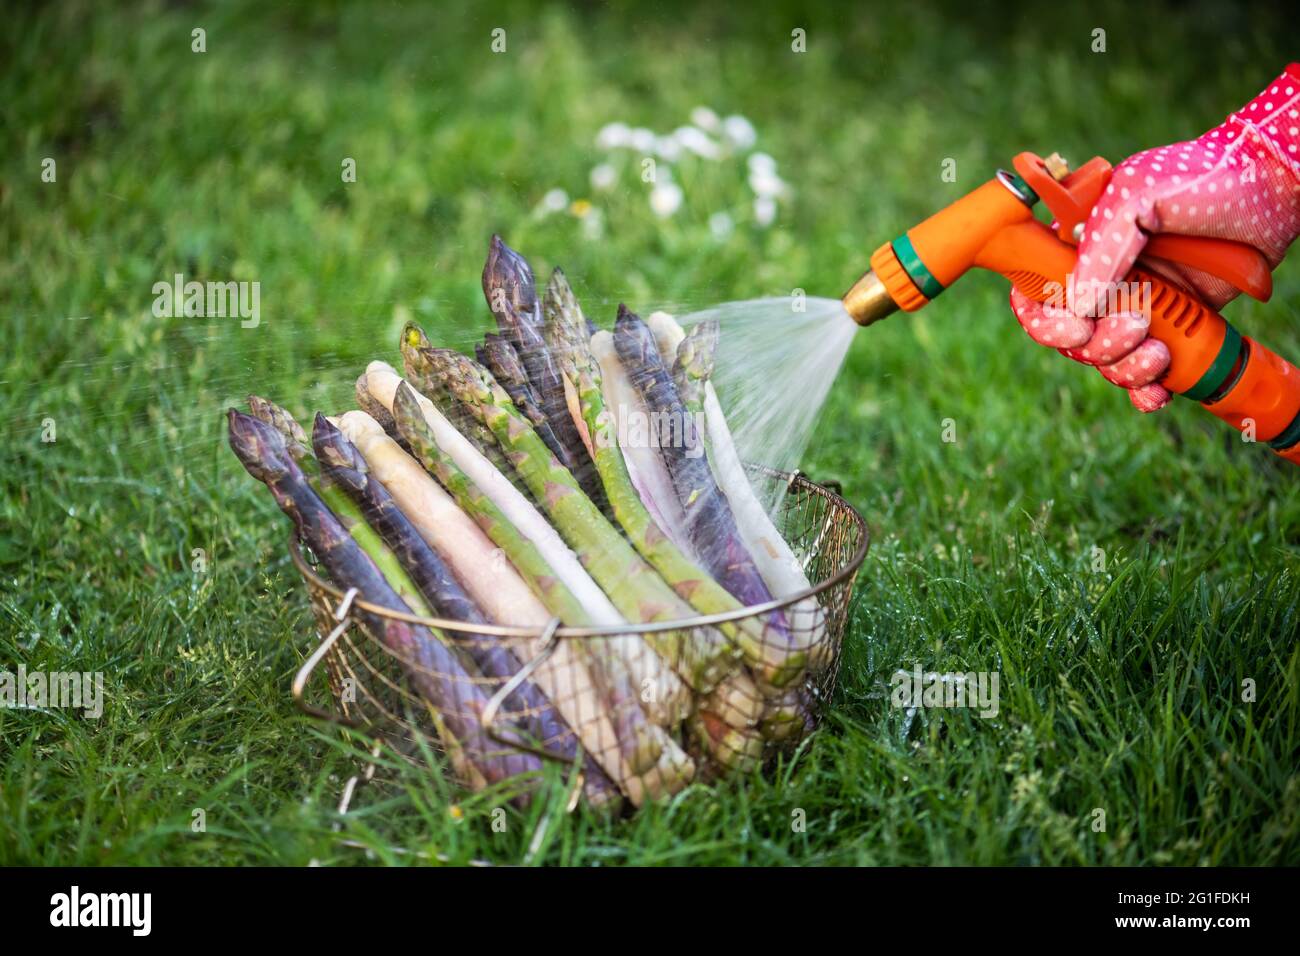 Bauer wäscht Spargelsprossen mit Gartenschlauch. Frische grüne, violette und weiße Spargelsprossen. Food-Fotografie Stockfoto